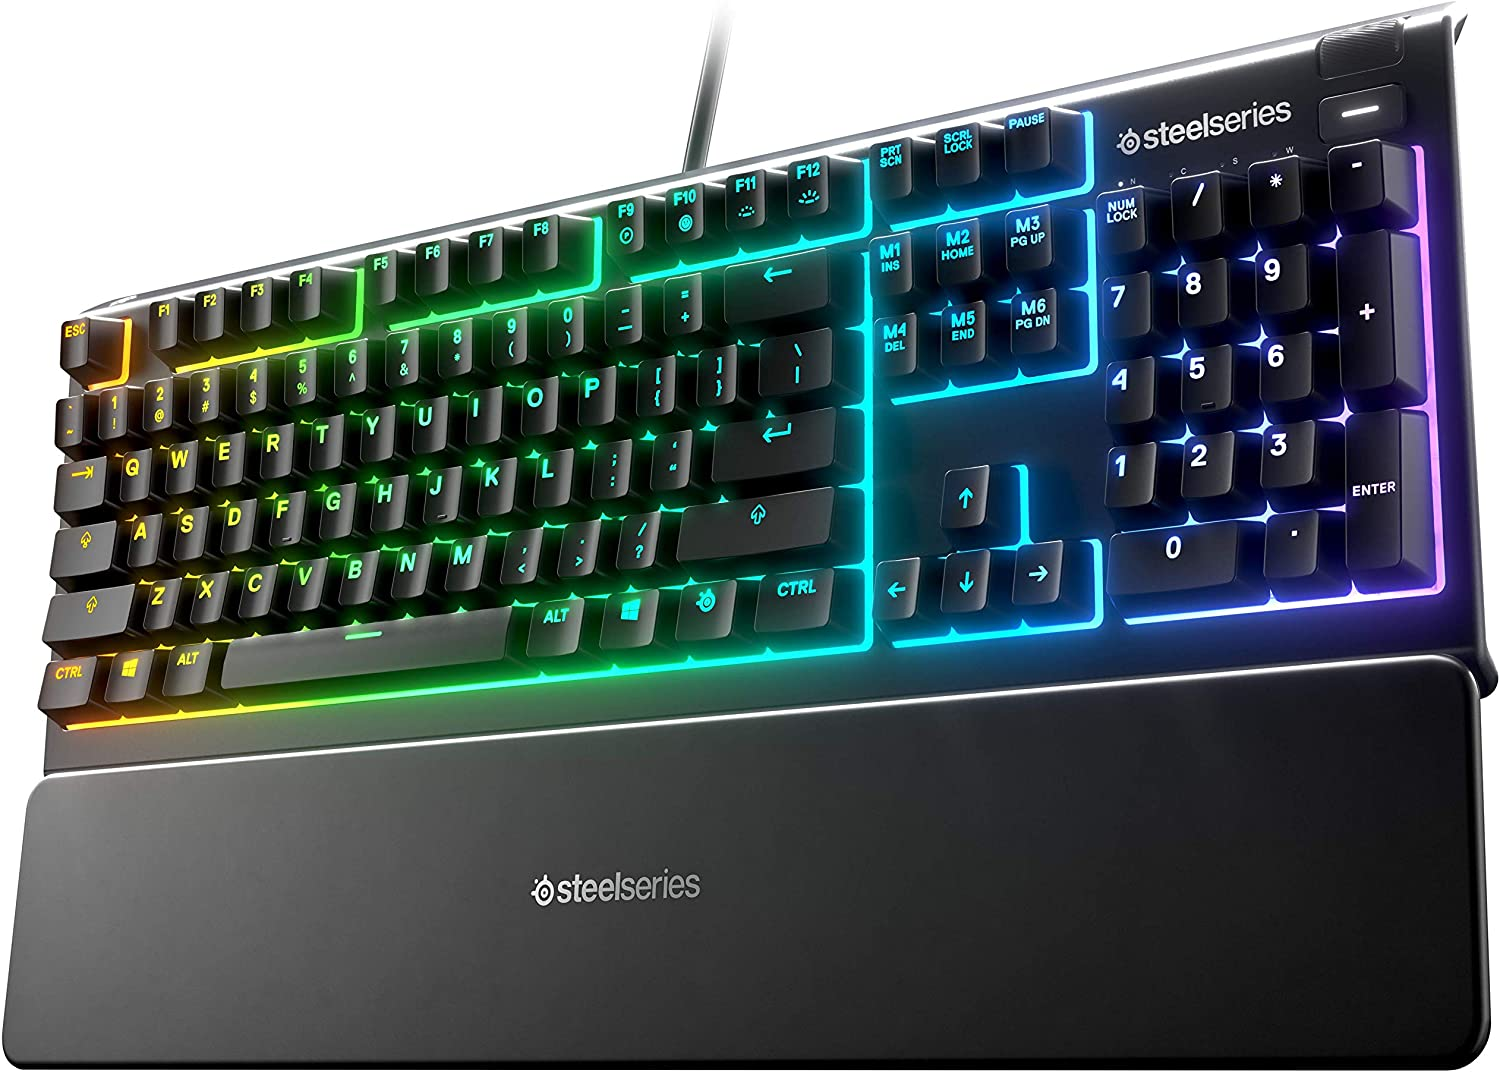 SteelSeries Apex 3 RGB Gaming Keyboard $38.99